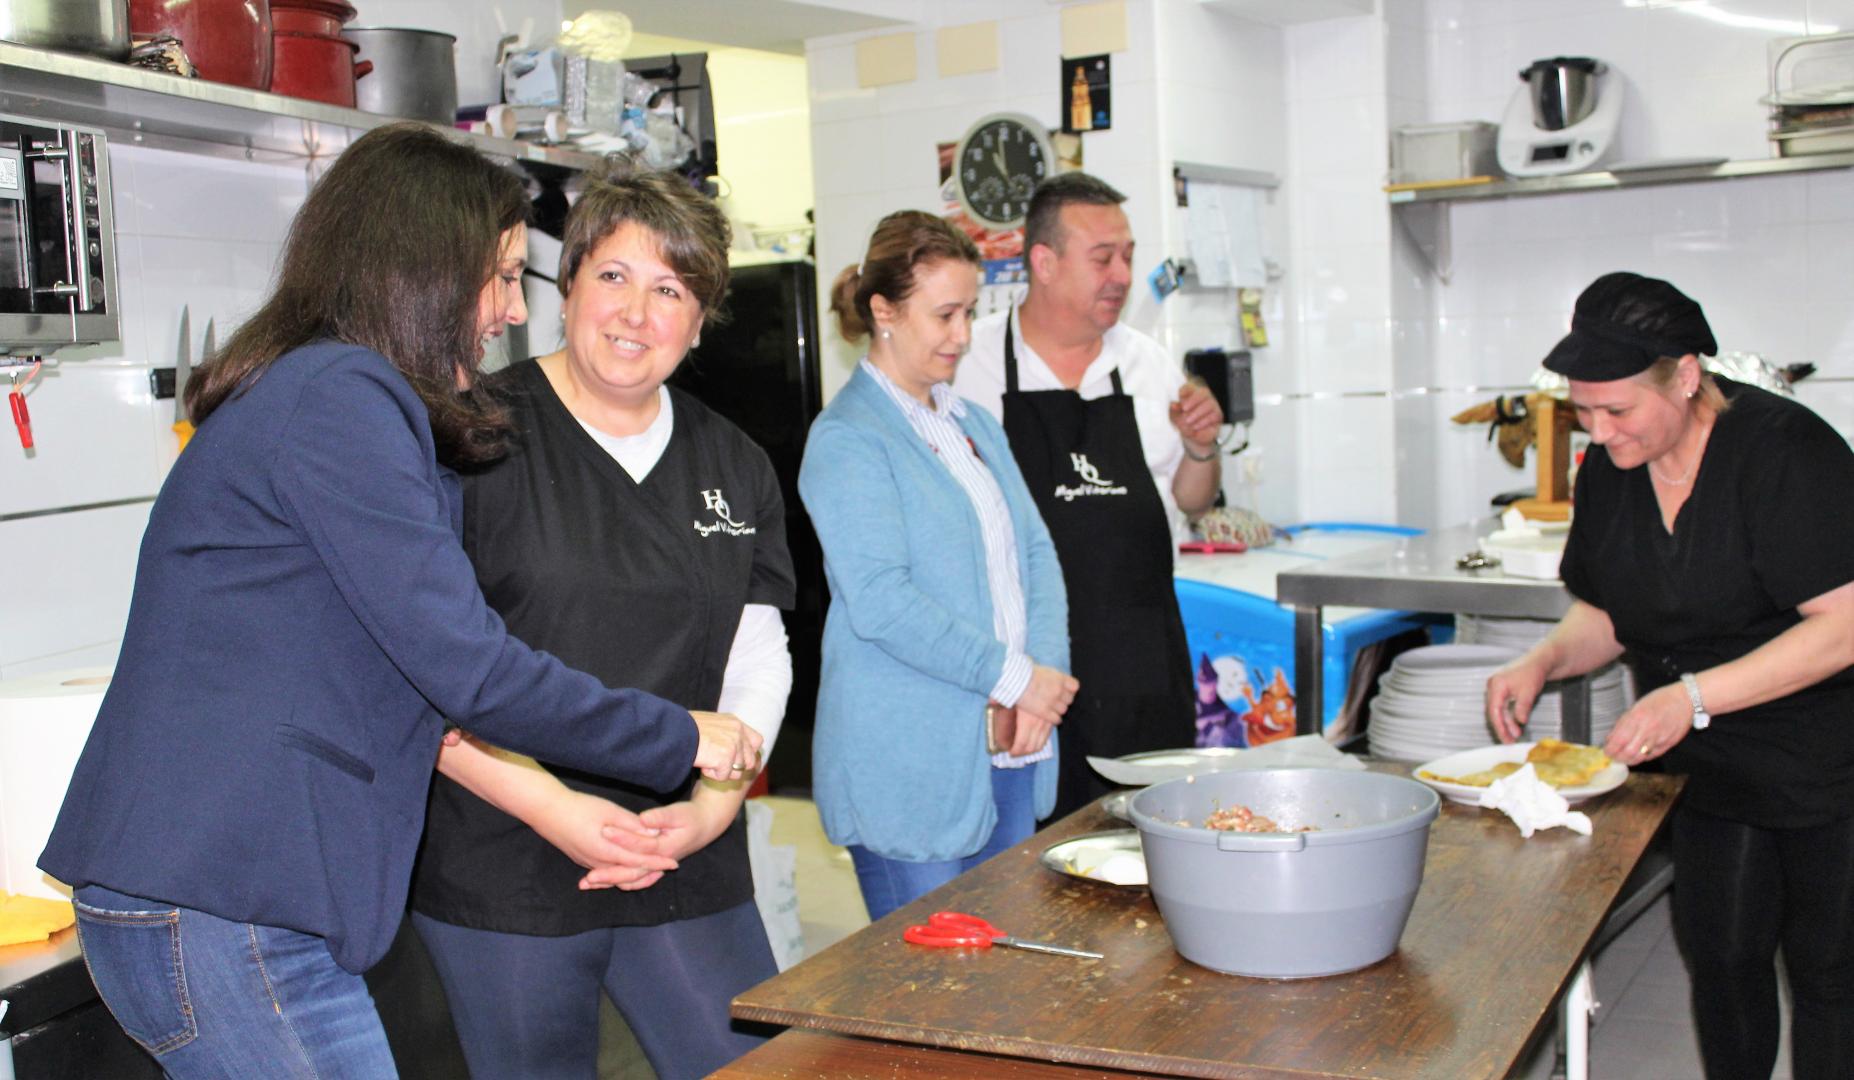 Jornada gastronómica en Bujalance - Taberna la Montillana